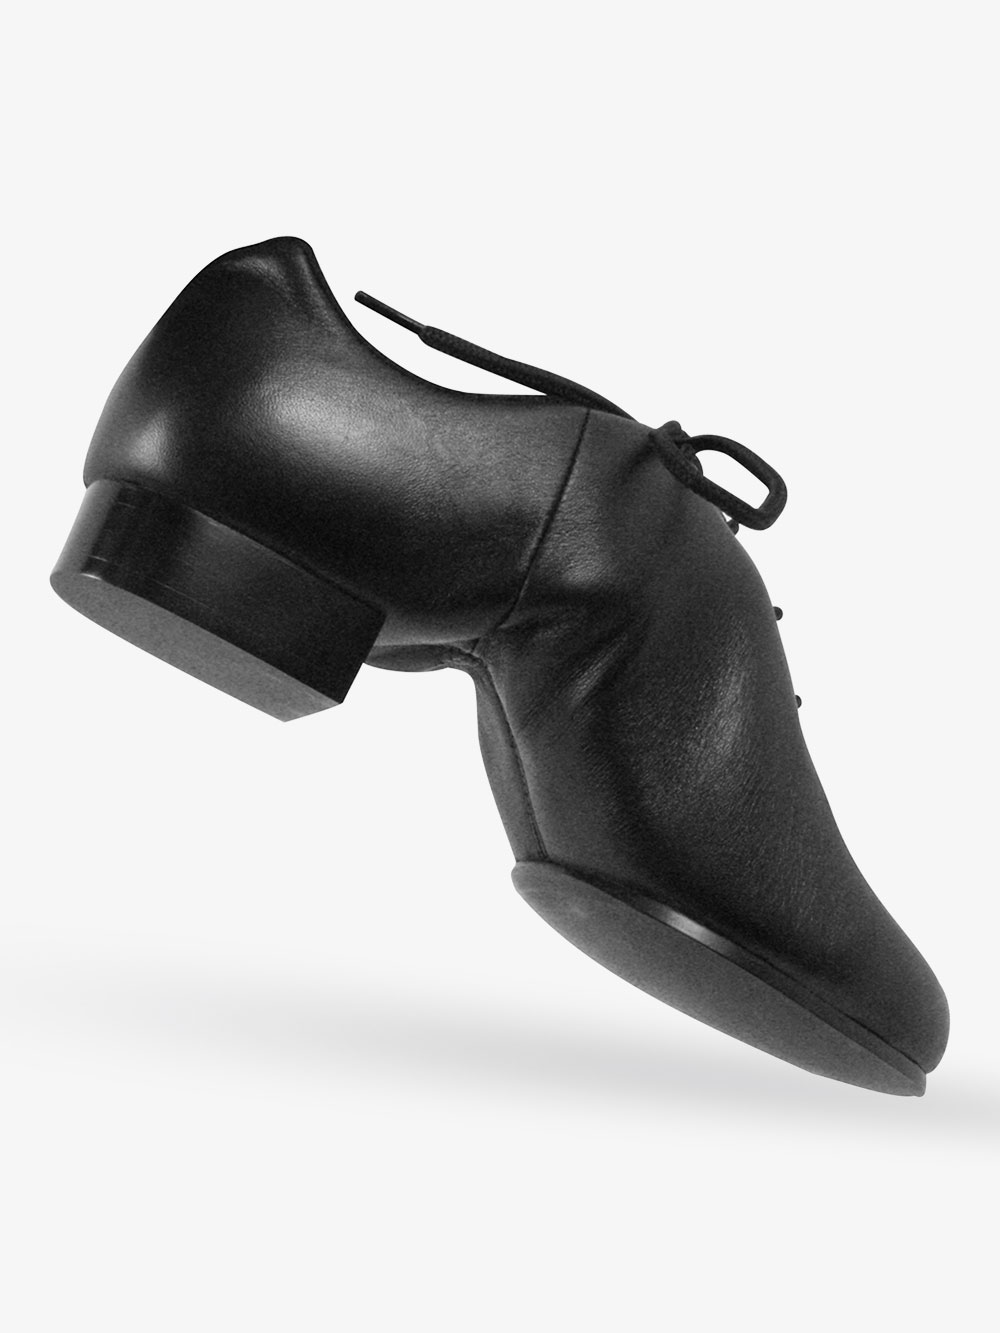 dance class clogging shoes